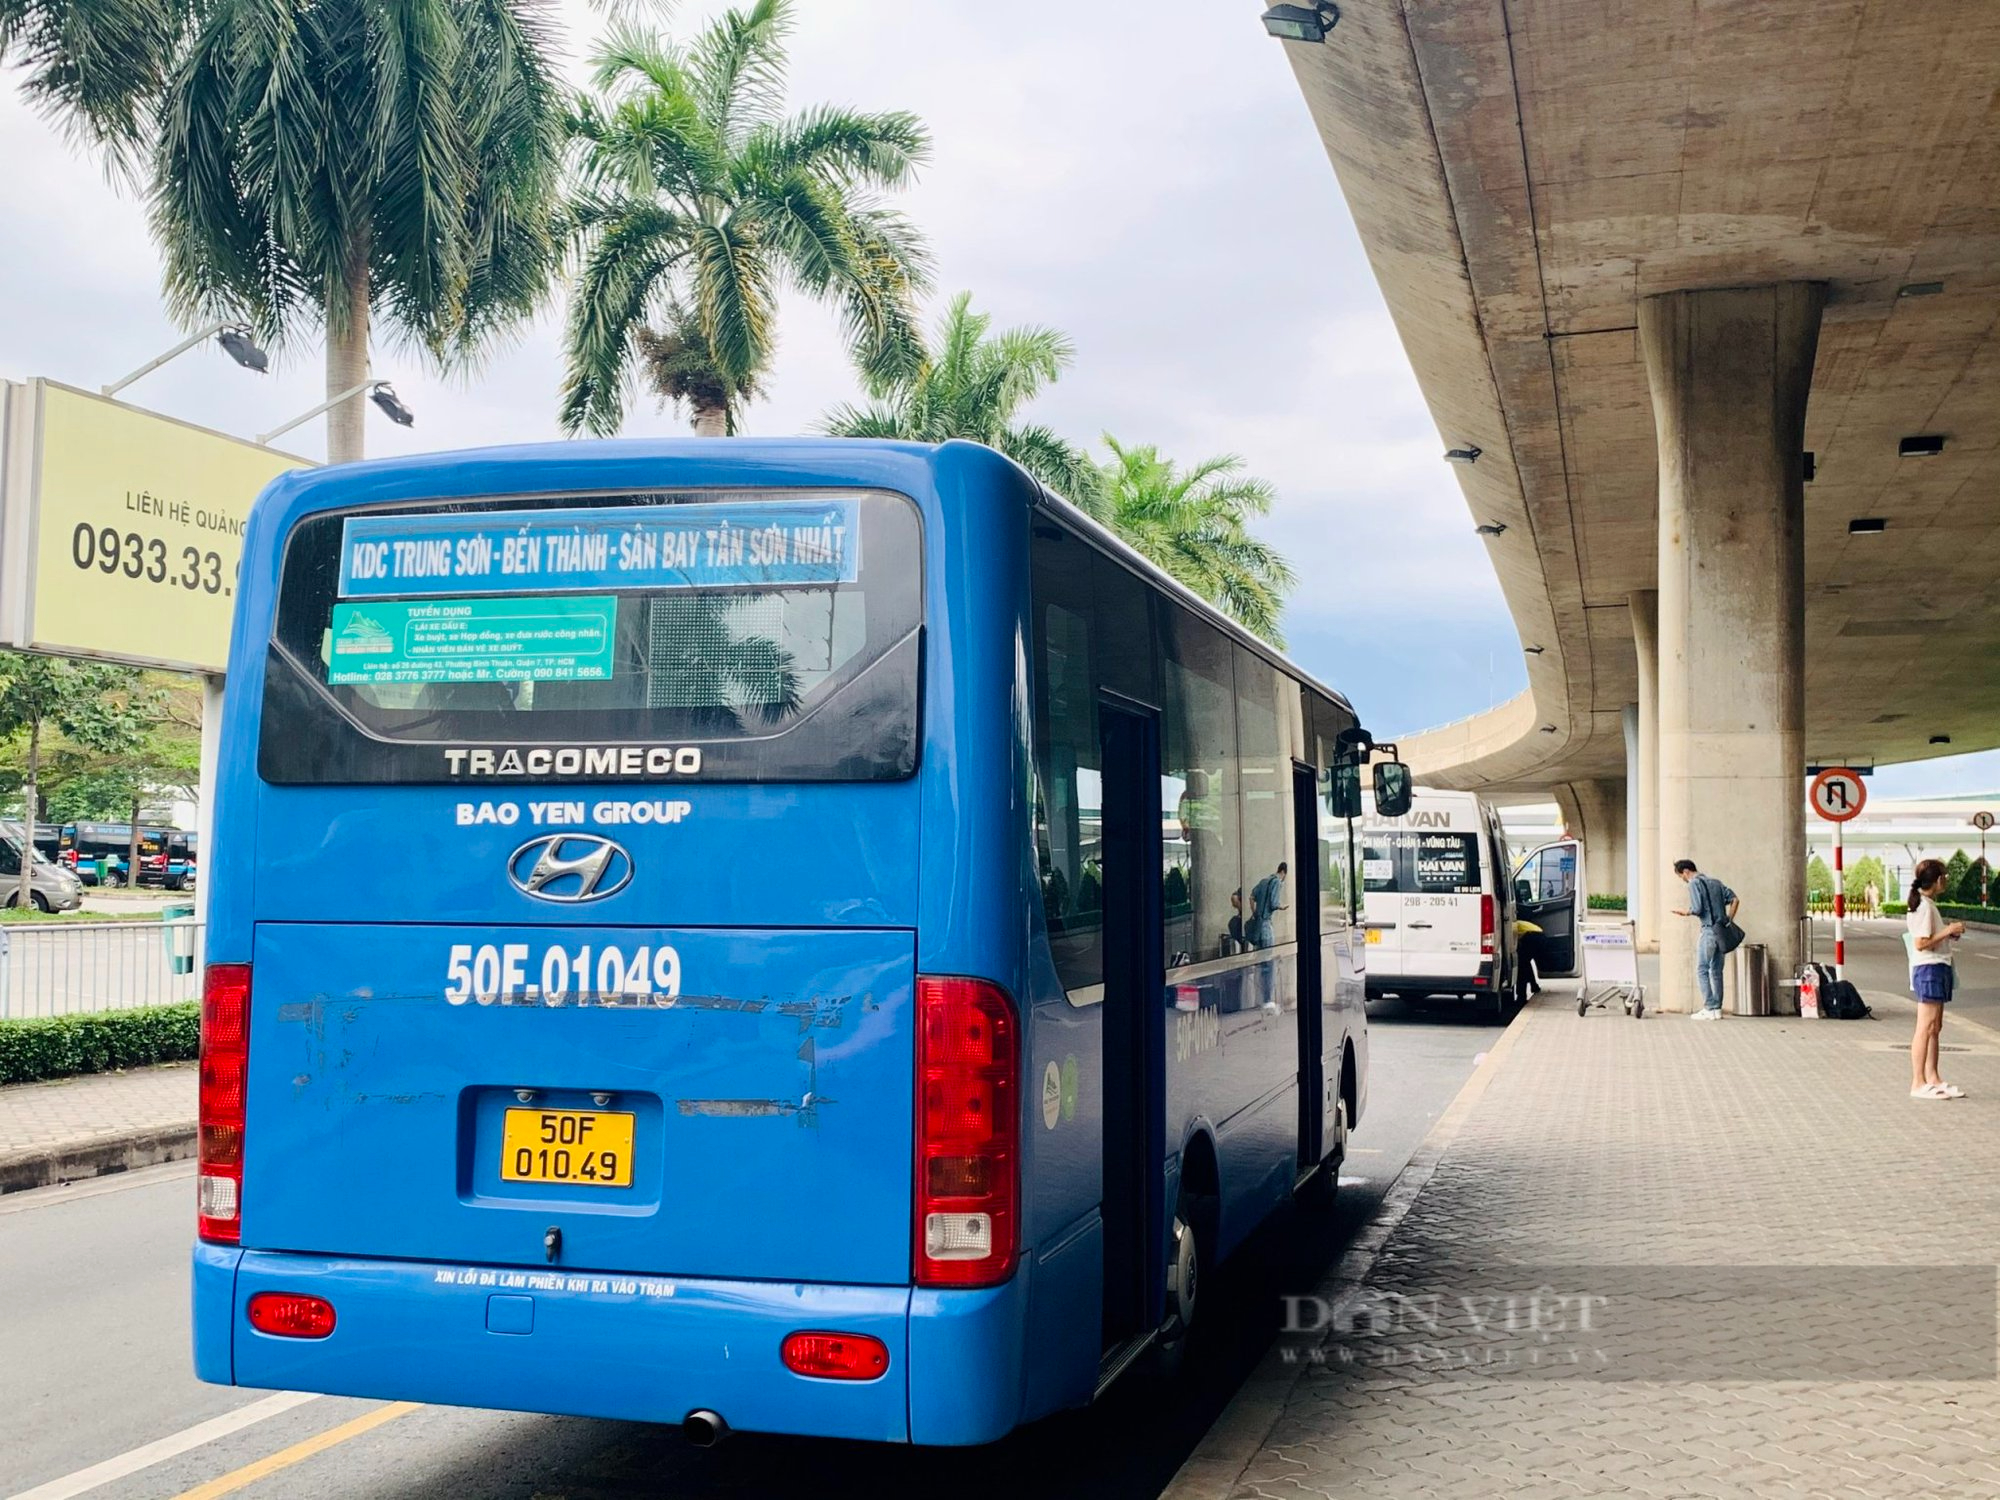 Tái khởi động tuyến xe buýt 109 giải toả ùn tắc sân bay Tân Sơn Nhất - Ảnh 3.